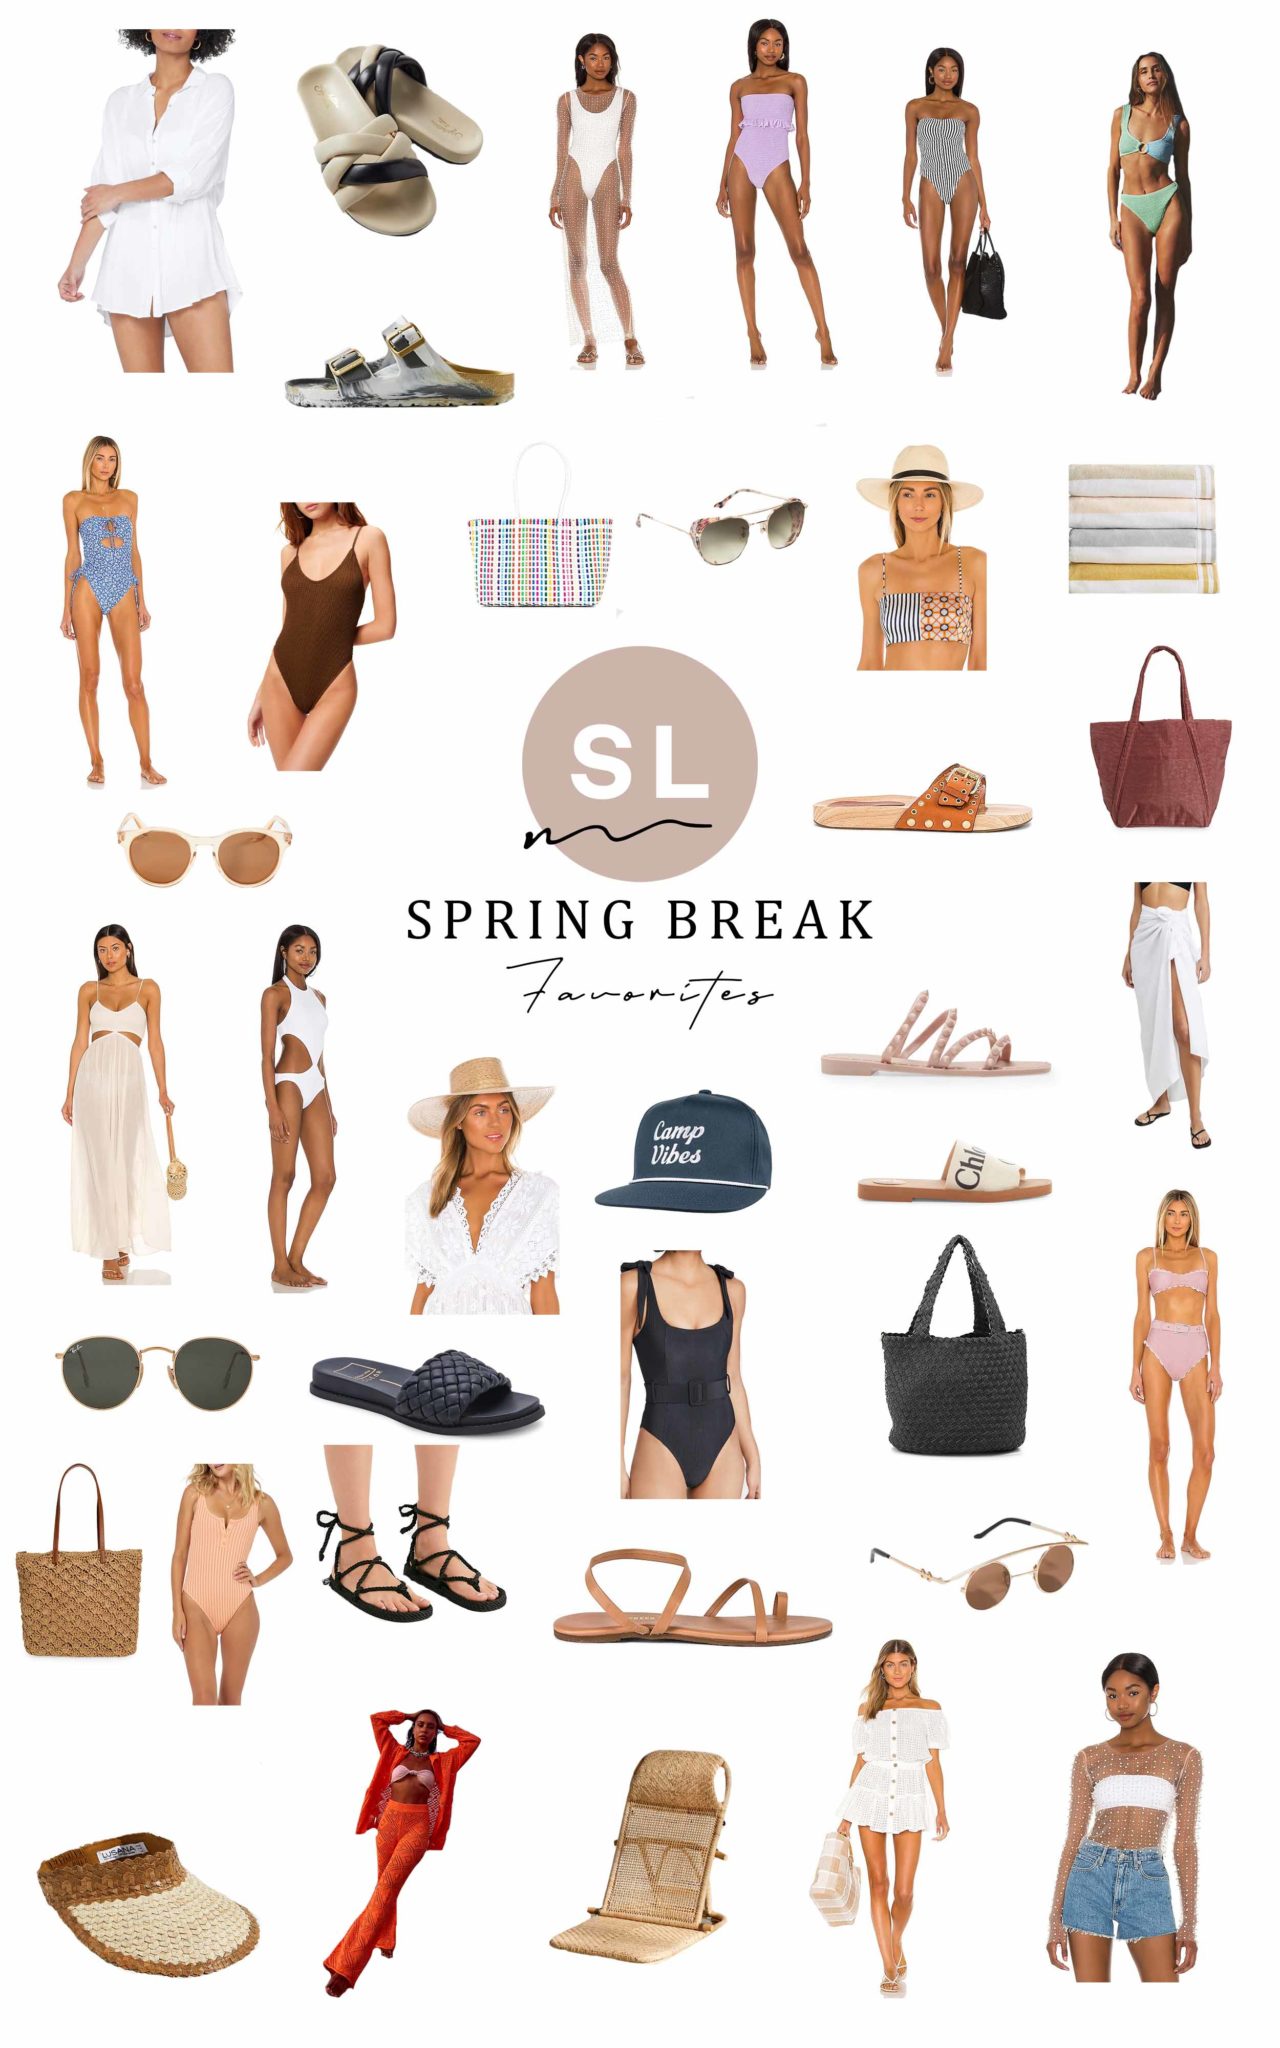 Spring Break Packing List